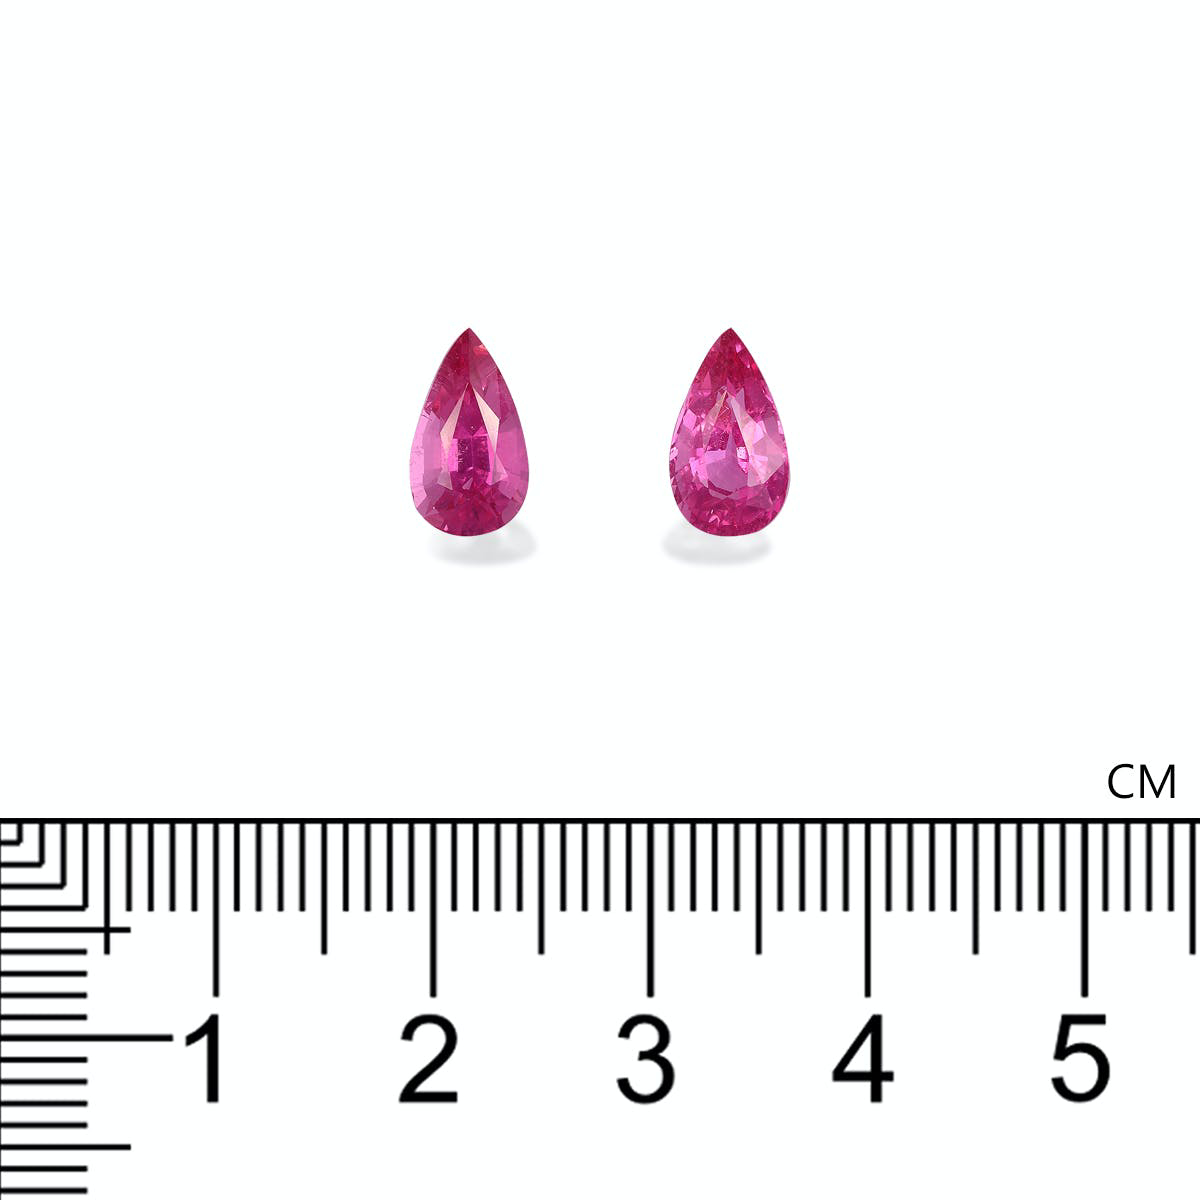 Fuscia Pink Rubellite Tourmaline 2.60ct - Pair (RL1286)